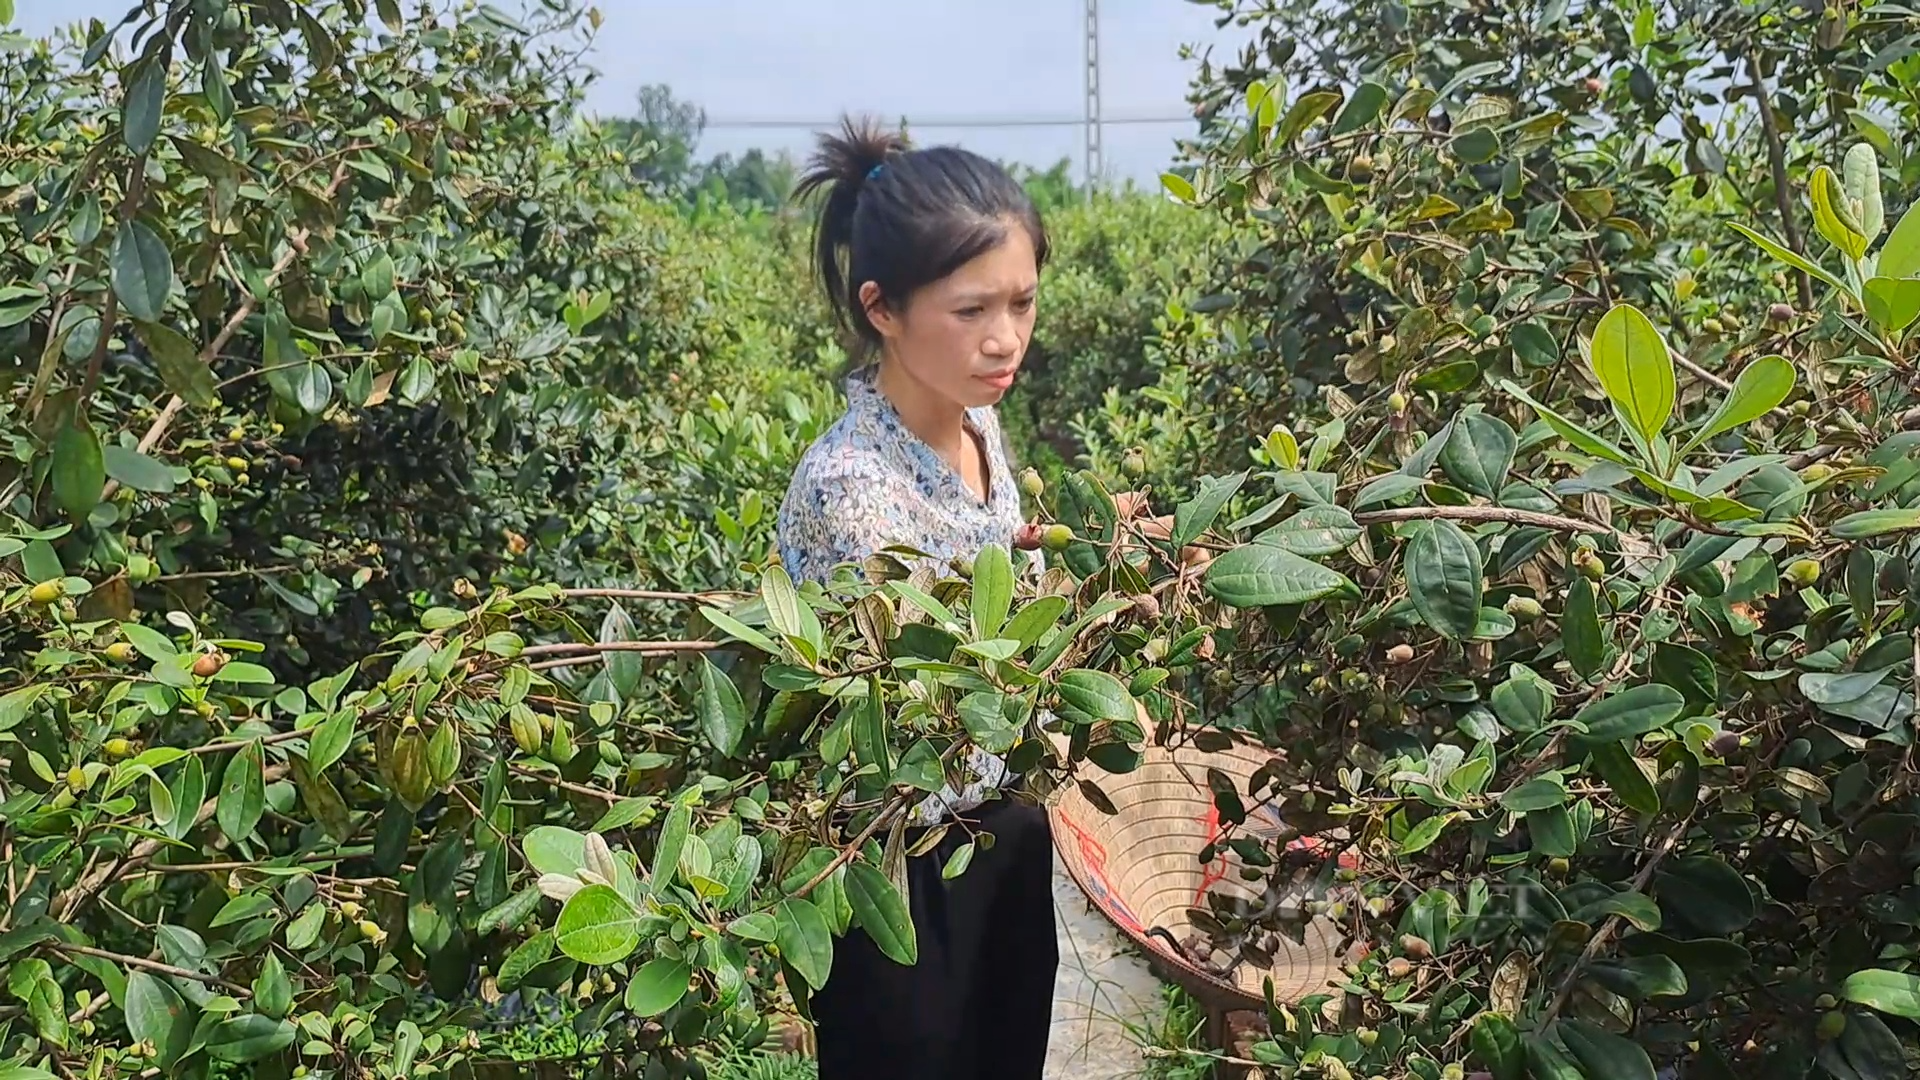 Đưa giống sim trên đất đồi cằn về trồng tại vườn nhà, cô giáo Thái Nguyên quyết bảo tồn loài cây này - Ảnh 2.